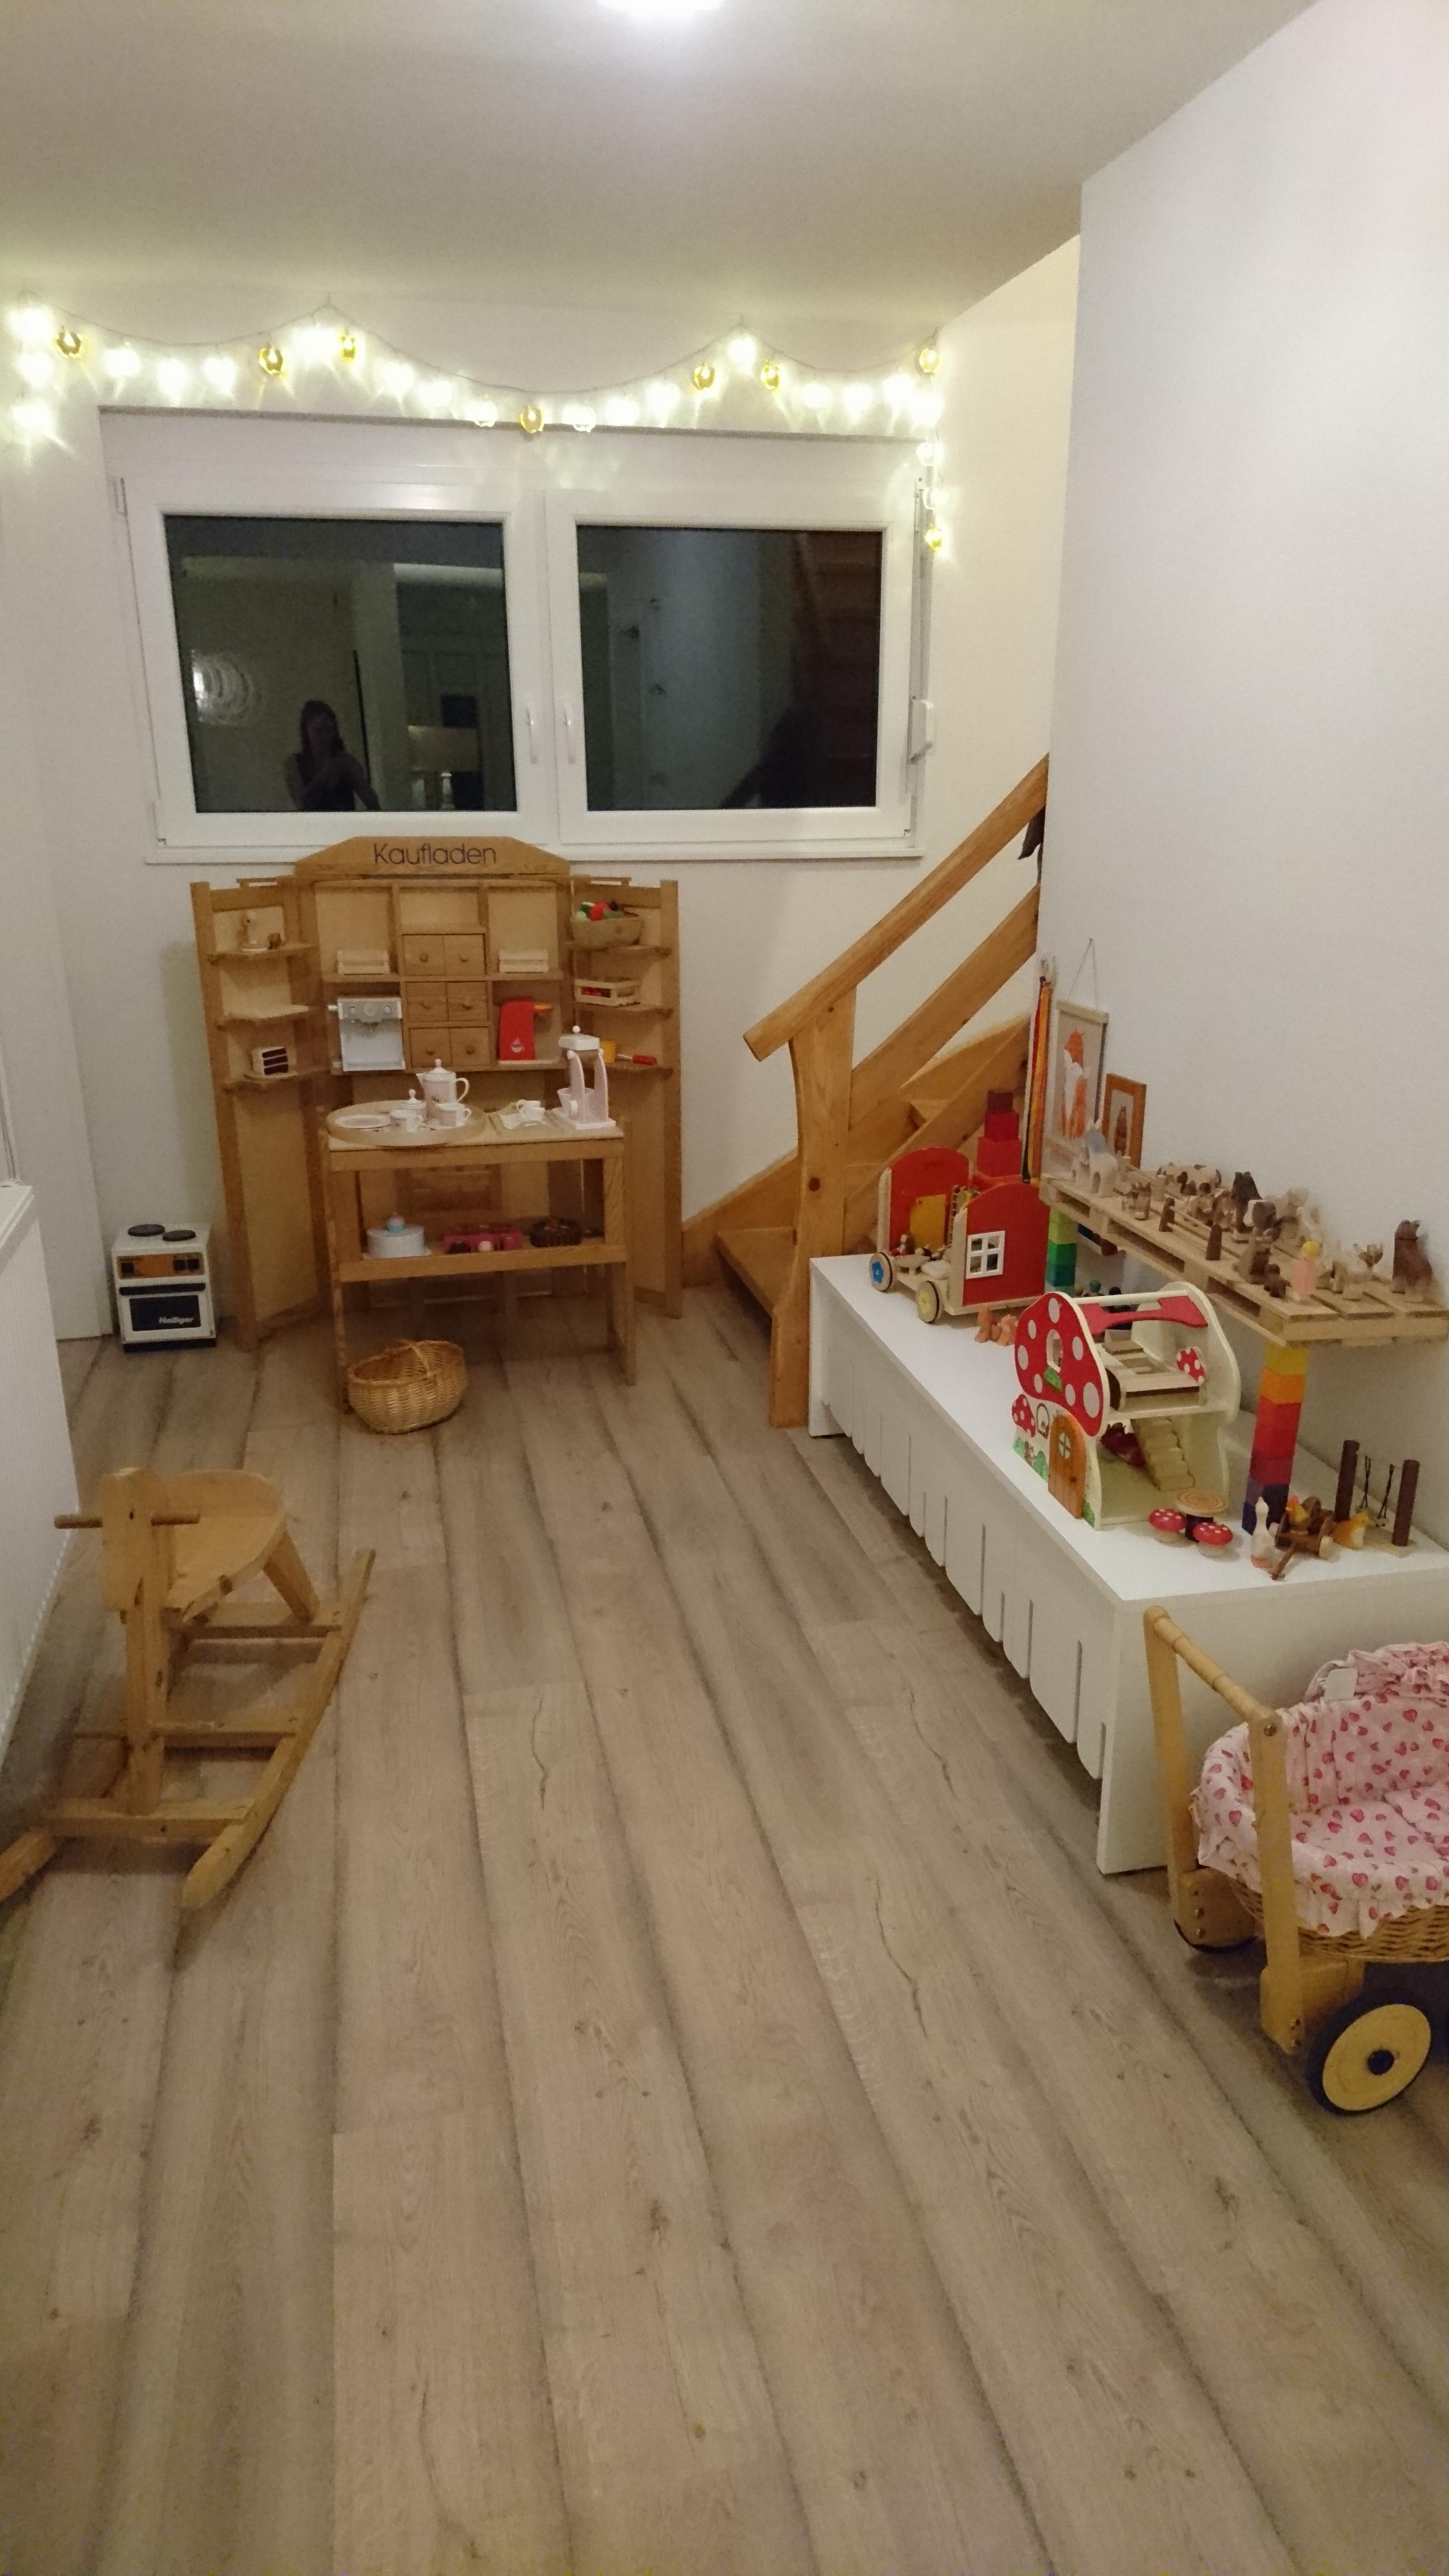 Offener Durchgangsbereich neben Wohnzimmer maximal genutzt # Kindheitstraum # Kinderzimmer 